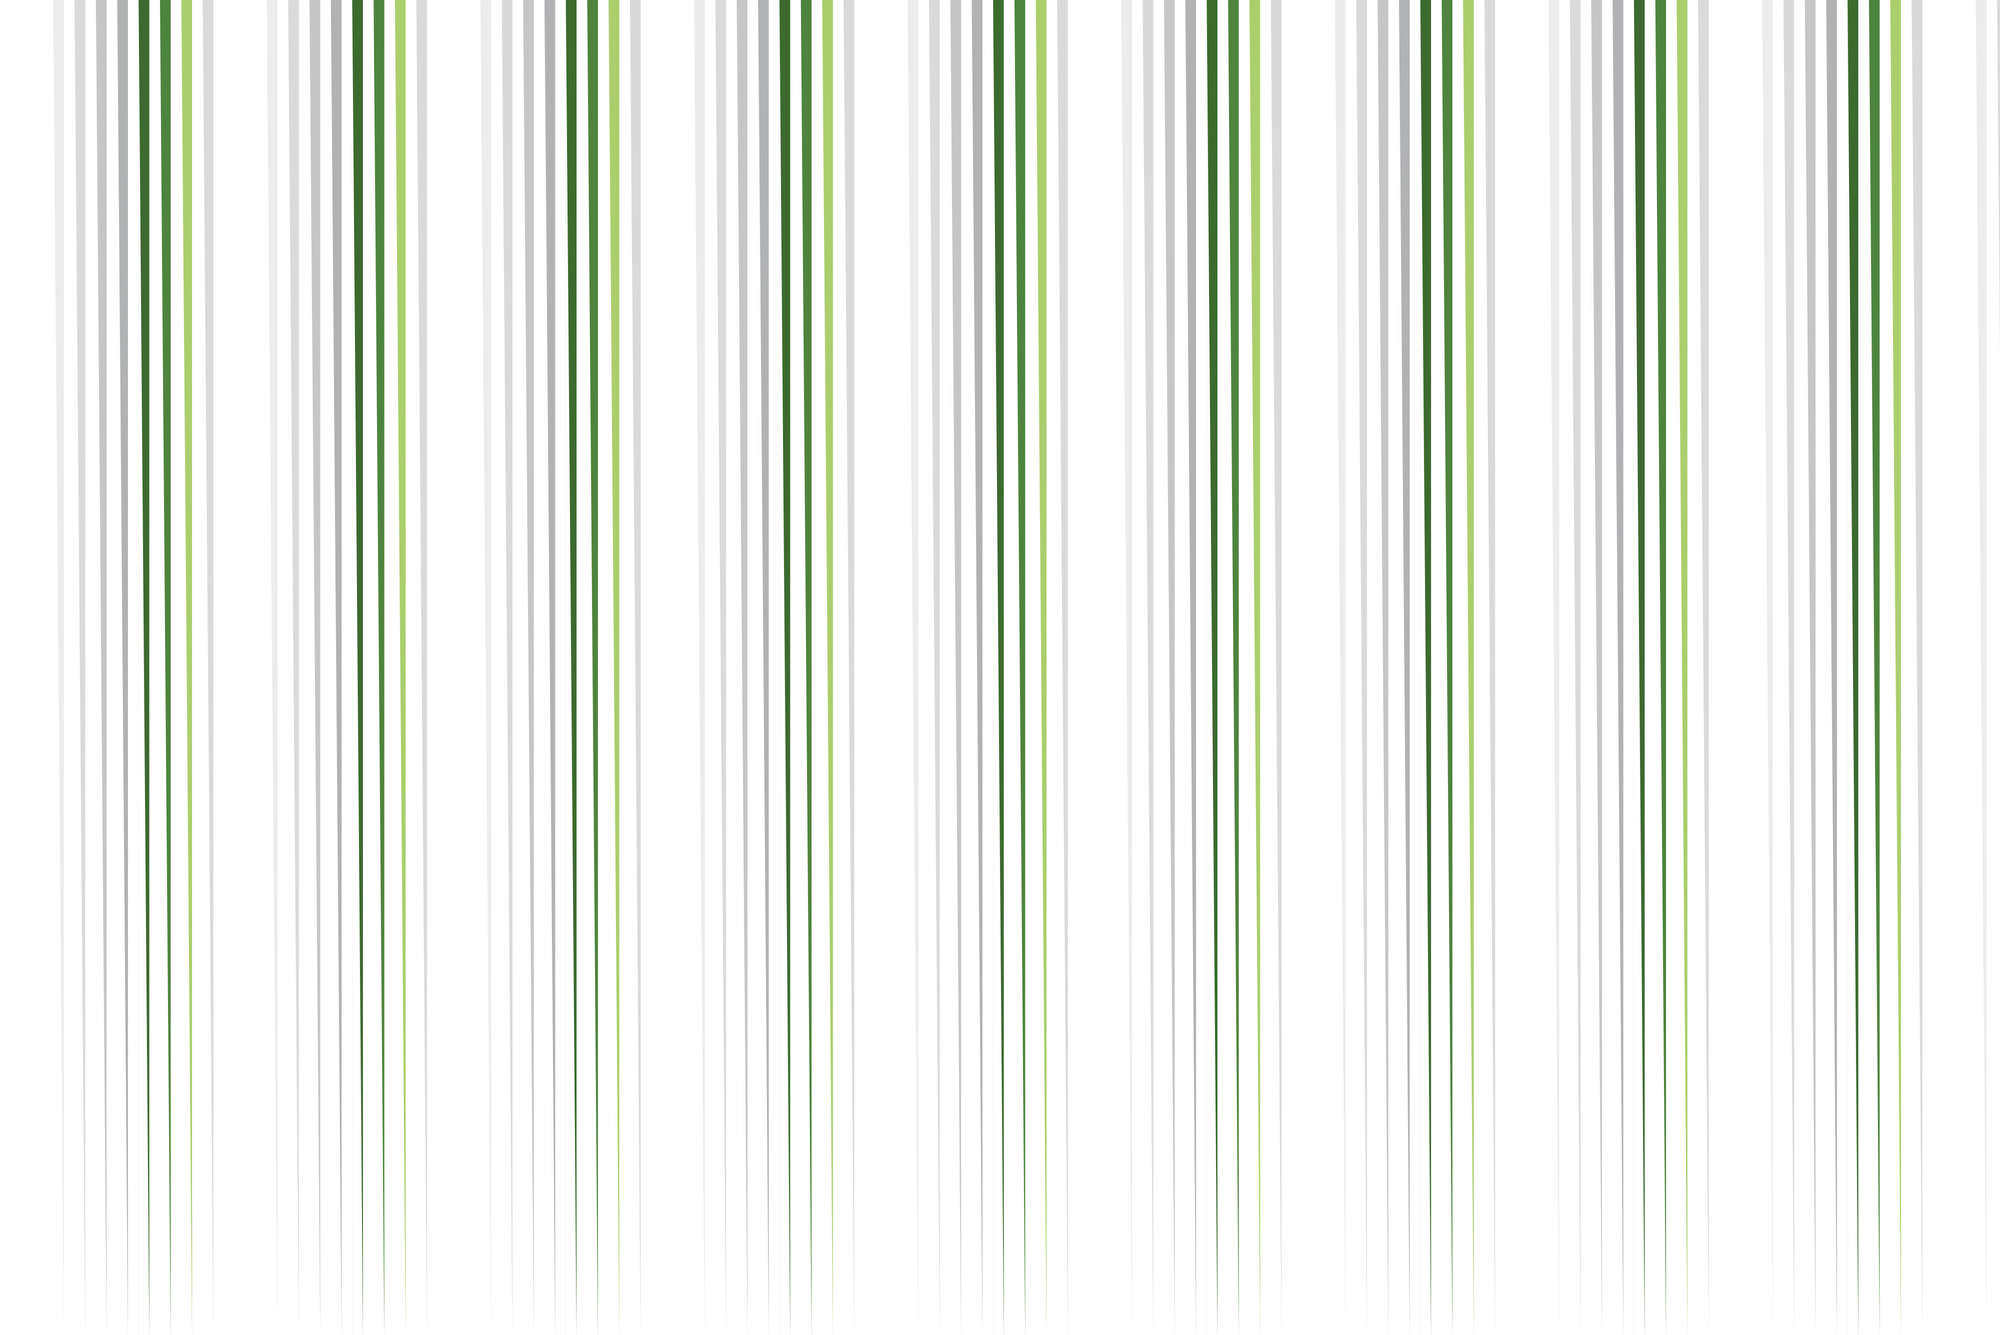             Design behang dunnen strepen wit groen op parelmoer glad vlies
        